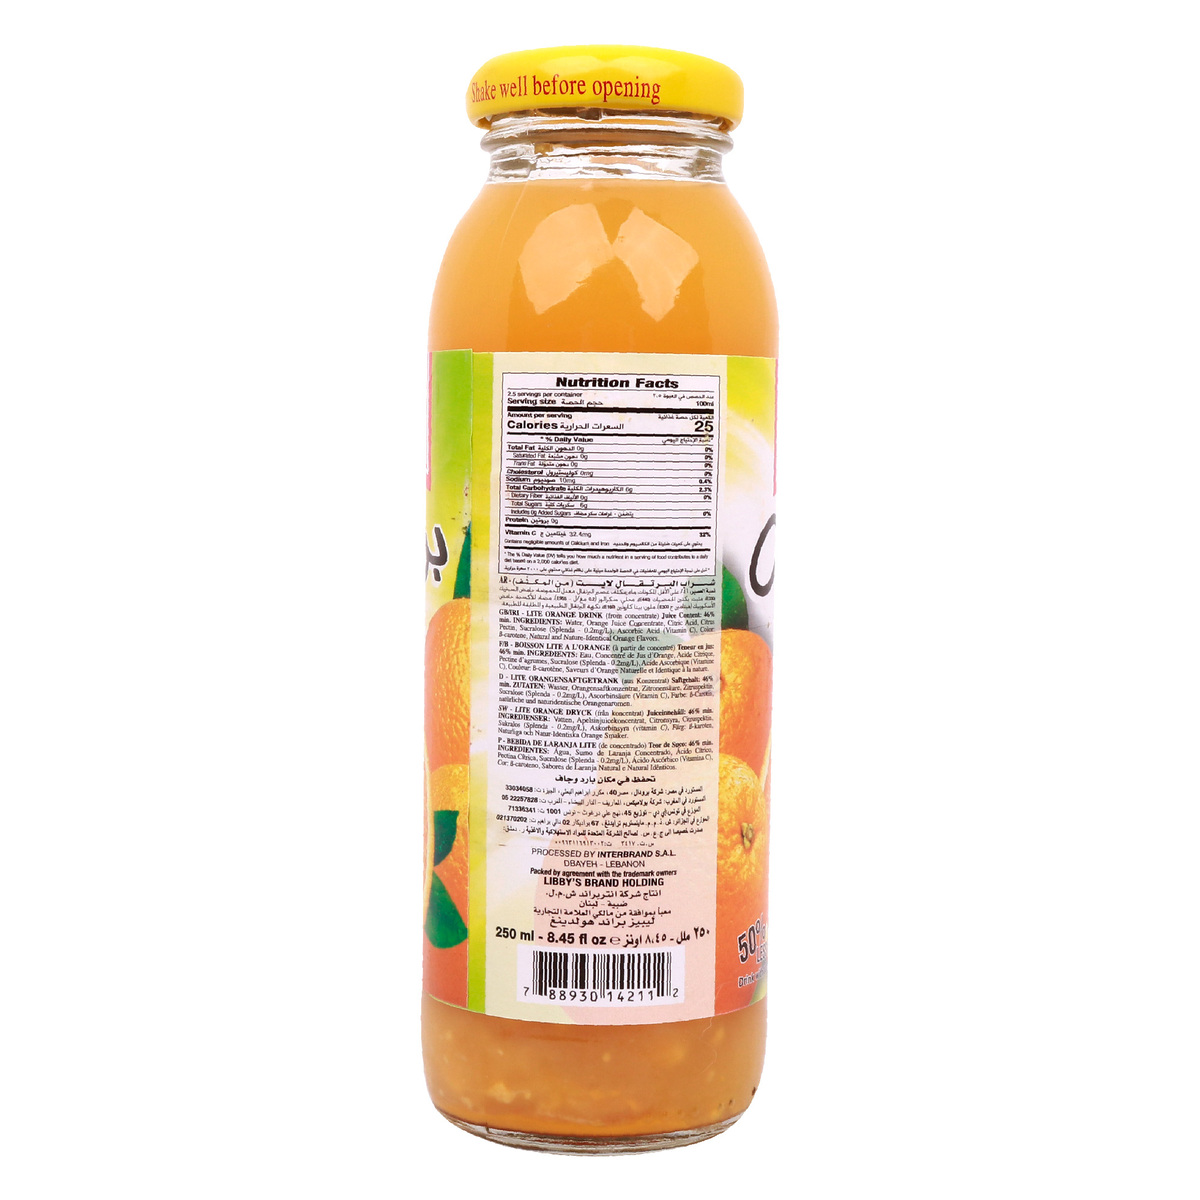 Libby's Orange Lite Juice 250 ml